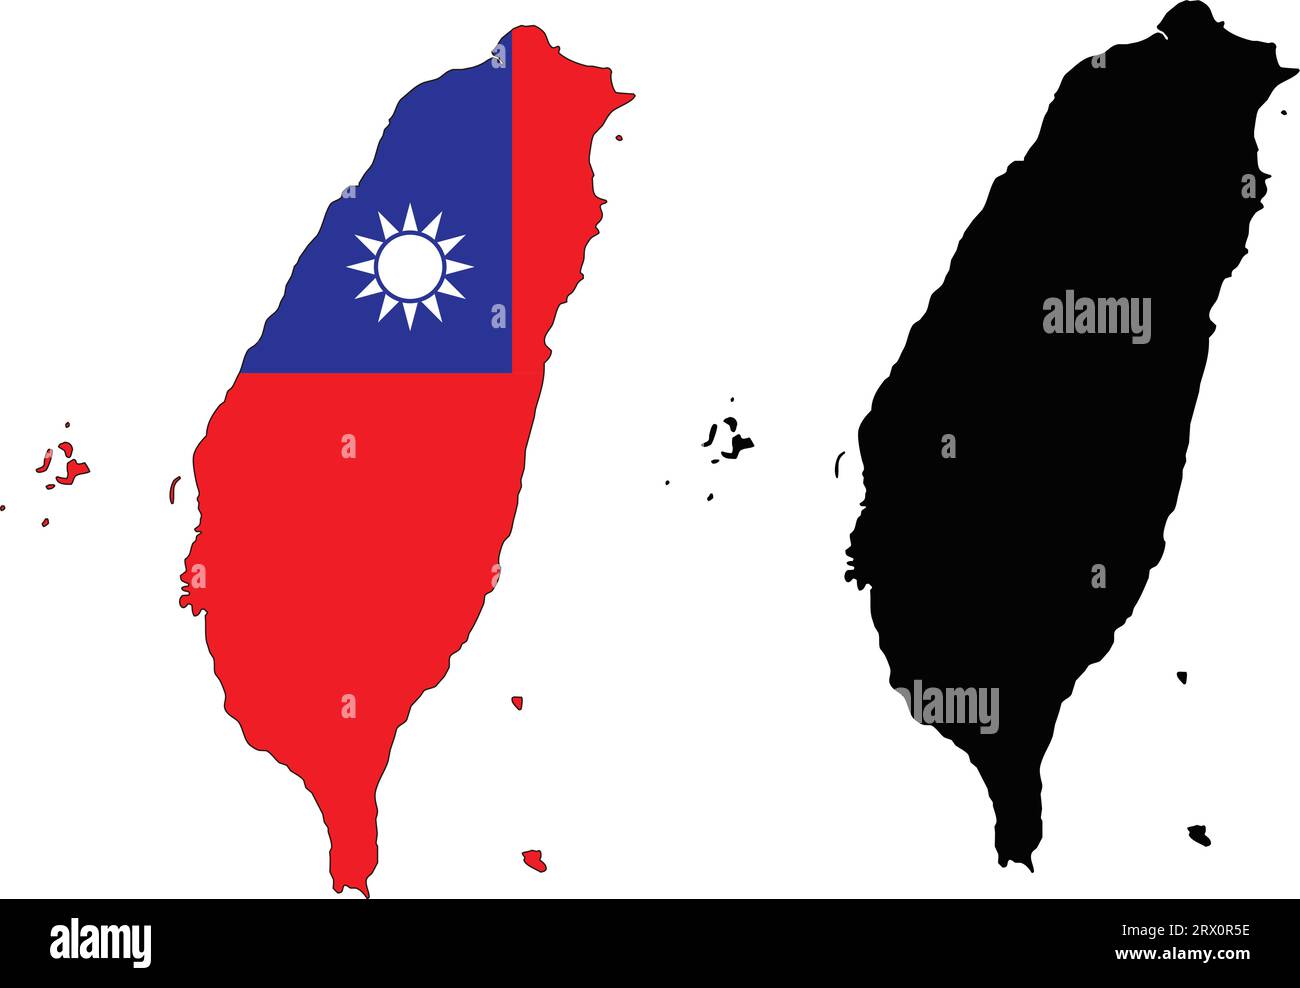 Geschichtete editierbare Vektor-Illustration Landkarte von Taiwan, die zwei Versionen enthält, bunte Landflagge Version und schwarze Silhouette Version. Stock Vektor